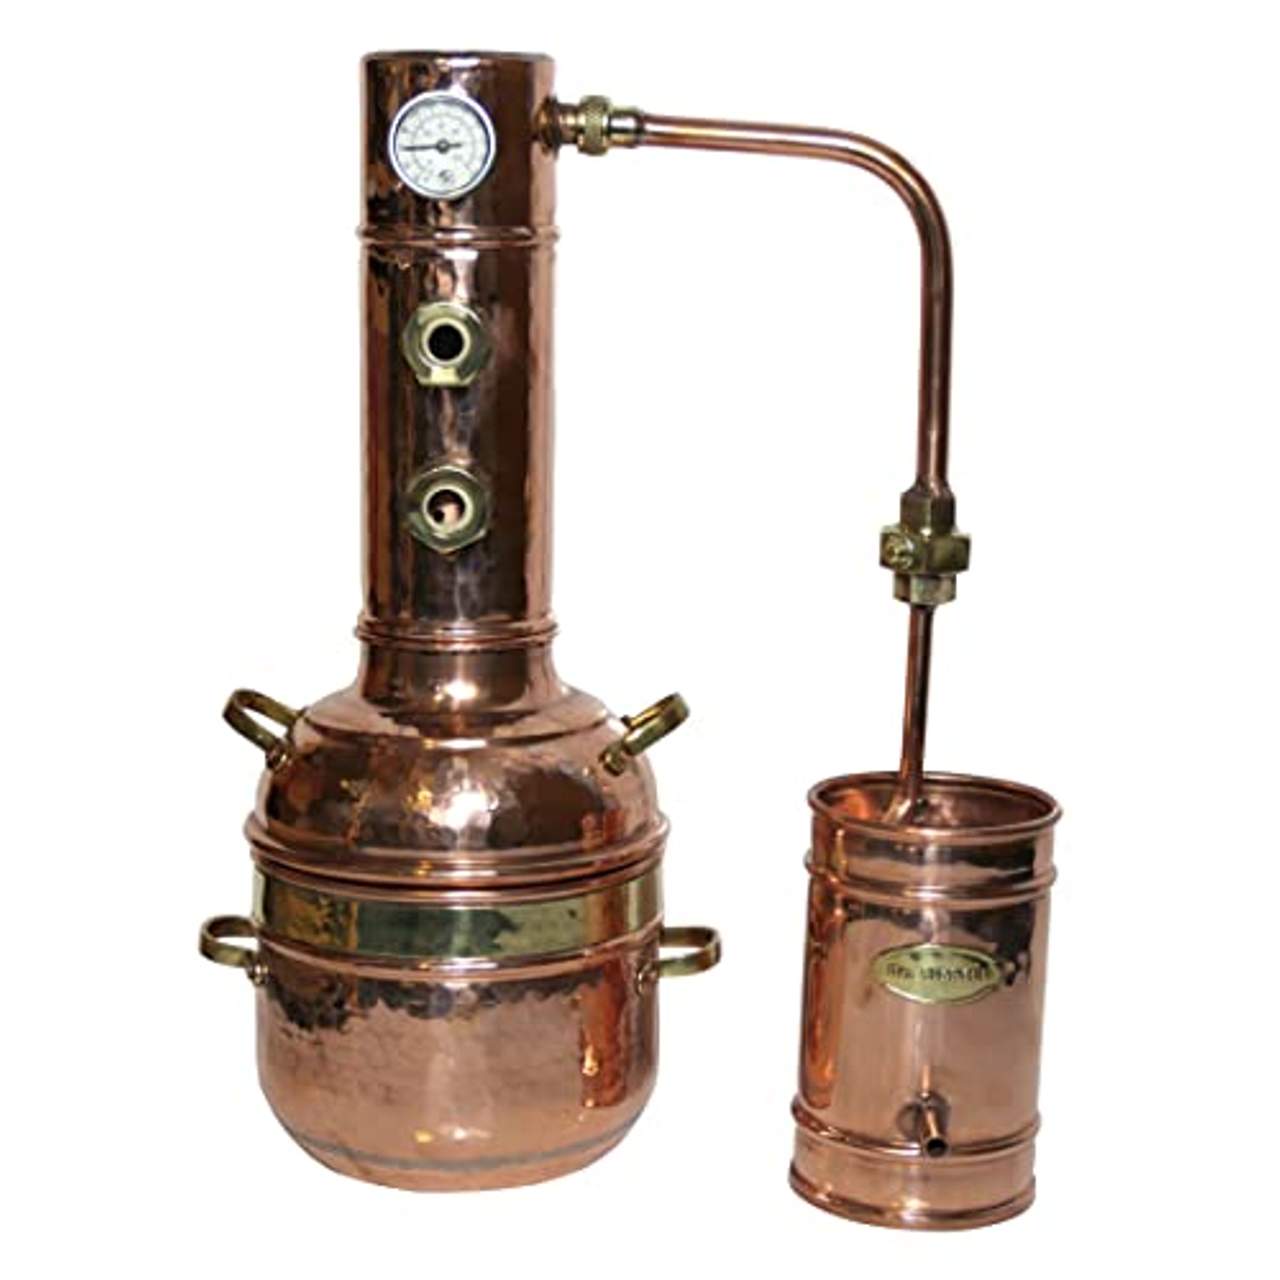 Dr Richter 2L Destille Modell Aroma II aus Kupfer produziert